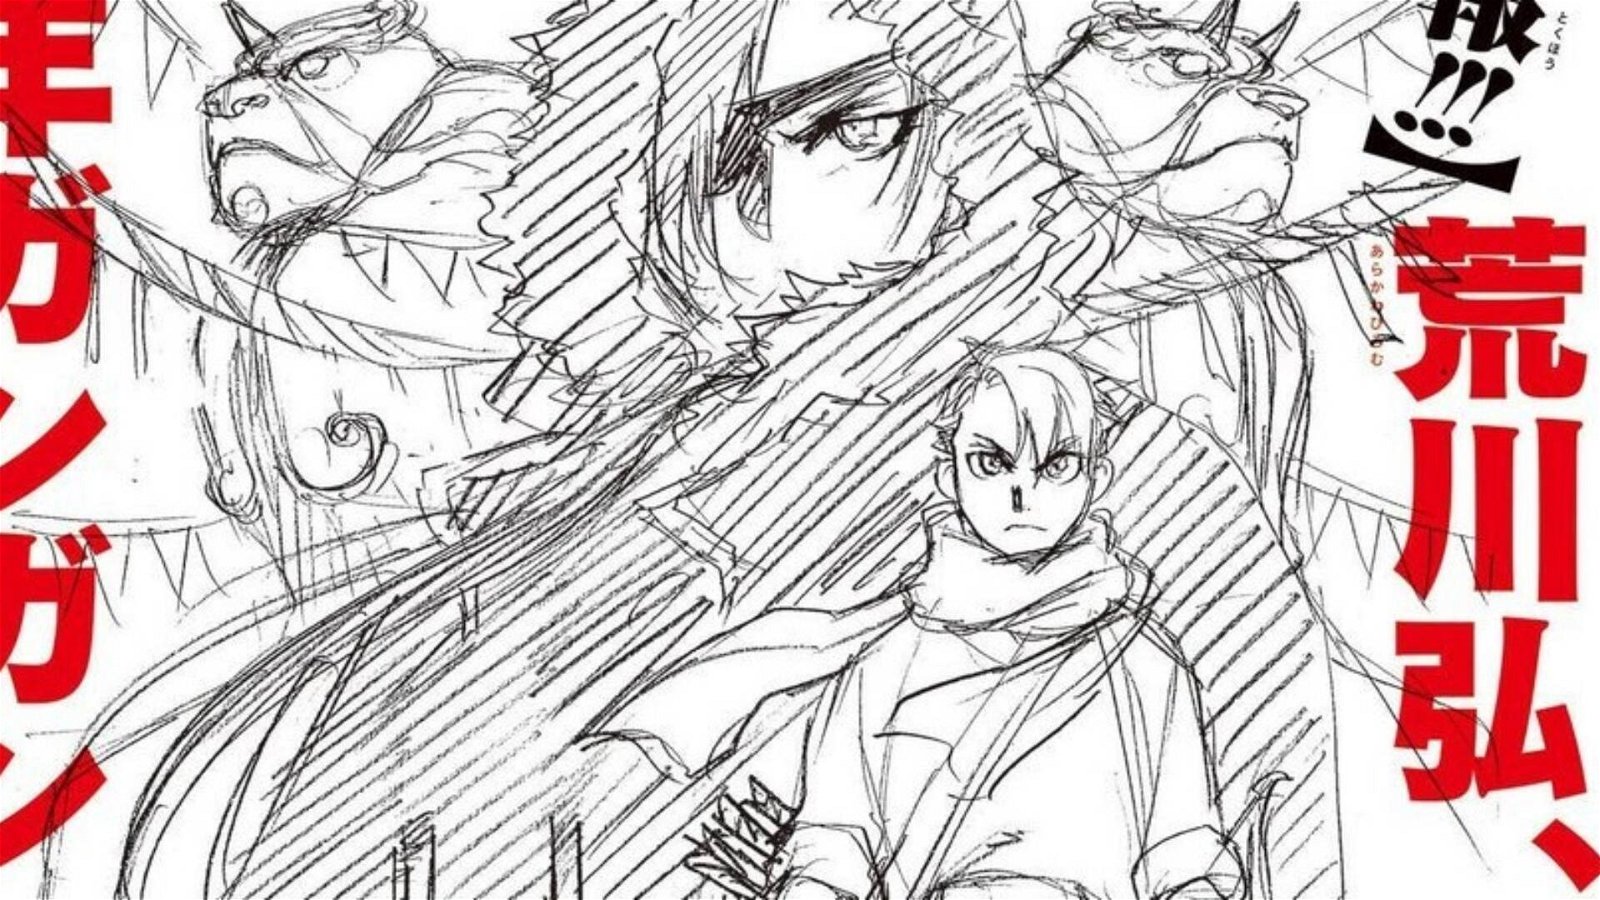 Immagine di Data di inizio e dettagli del nuovo manga di Hiromu Arakawa (Fullmetal Alchemist)